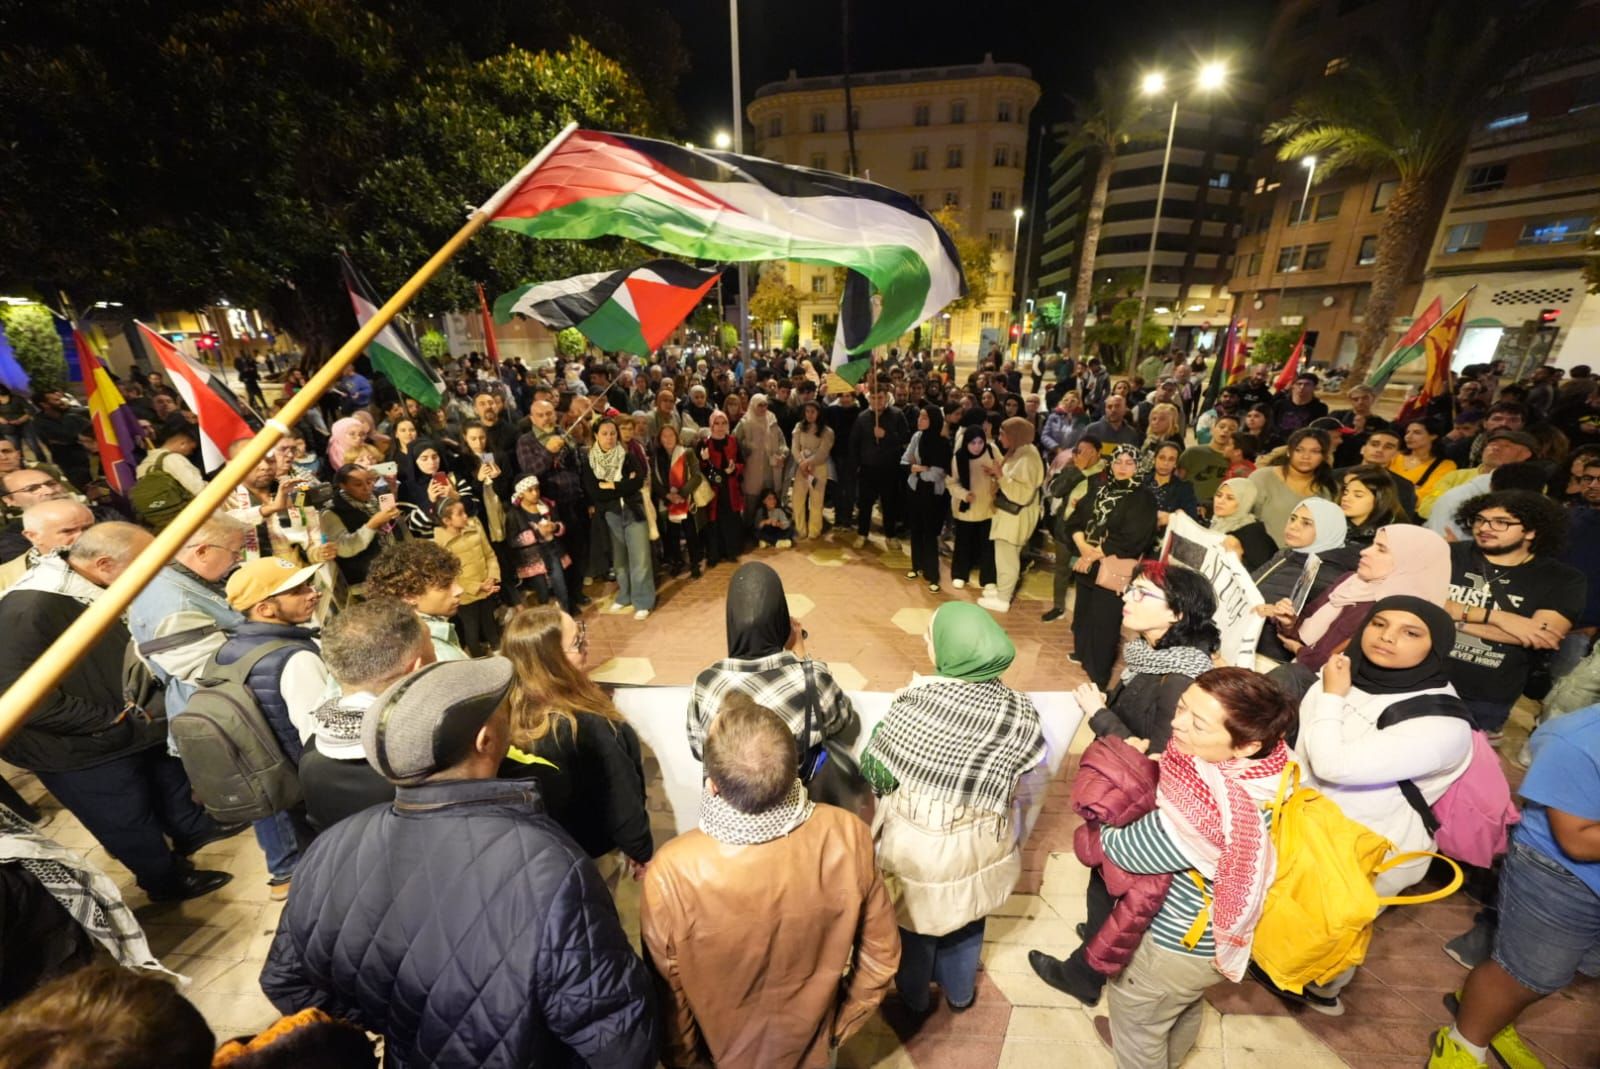 Galería: Multitudinaria manifestación en Castelló en defensa de Palestina